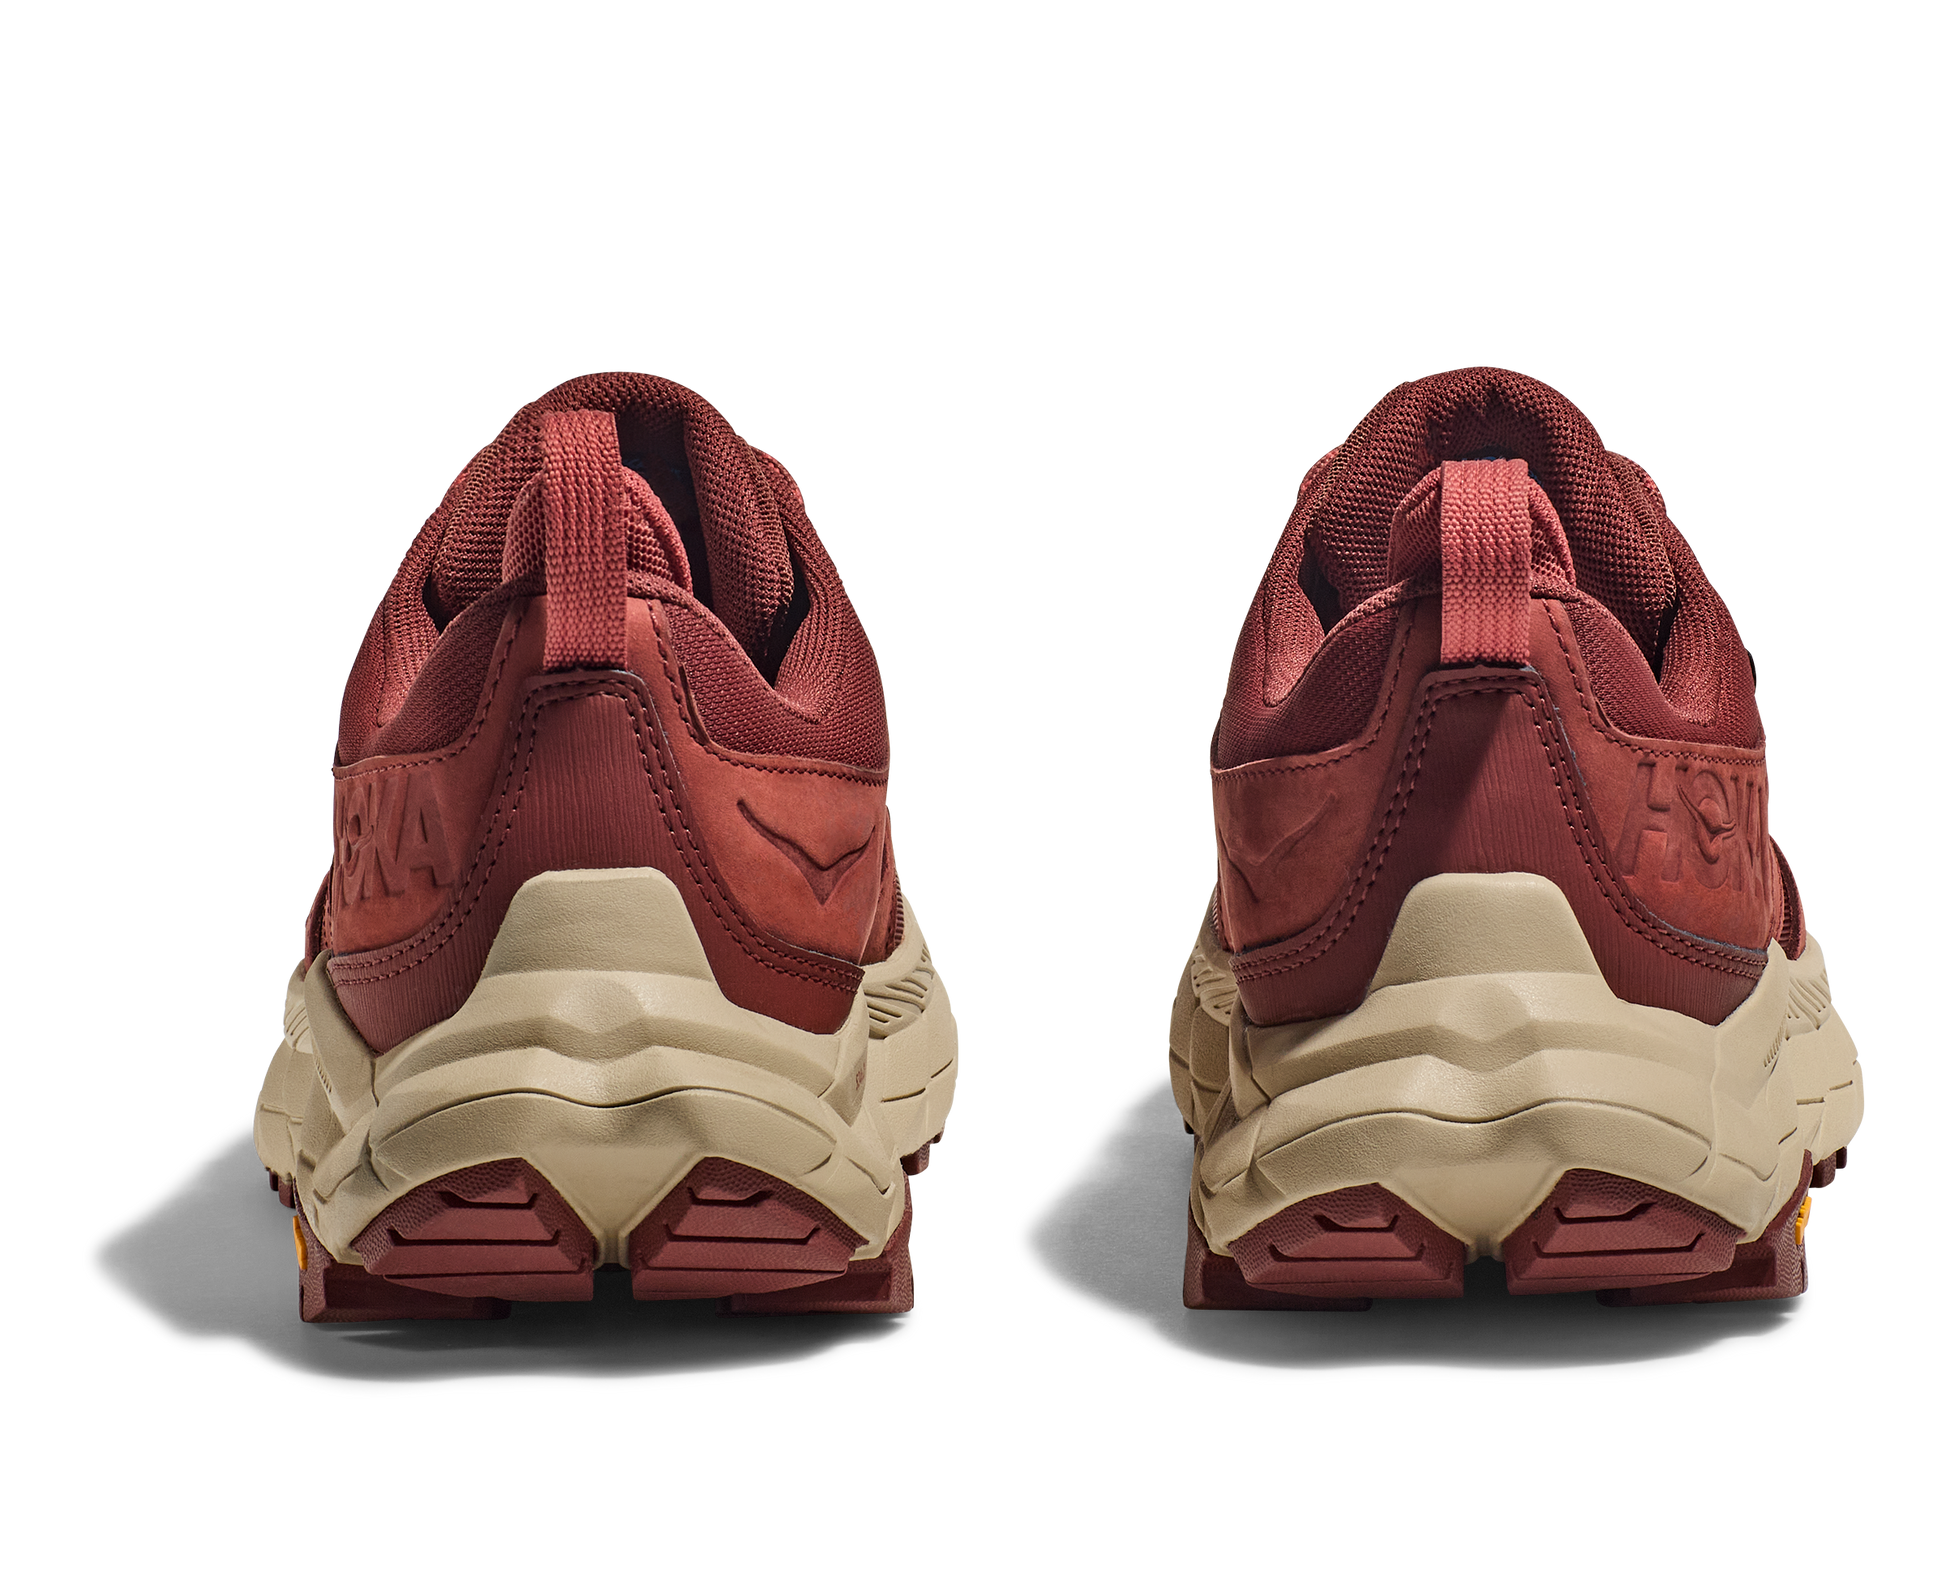 Anacapa W GTX low, röd vattentät sko perfekt för vandring i alla underlag och väder. Hos Hoka specialisterna i Sverige.